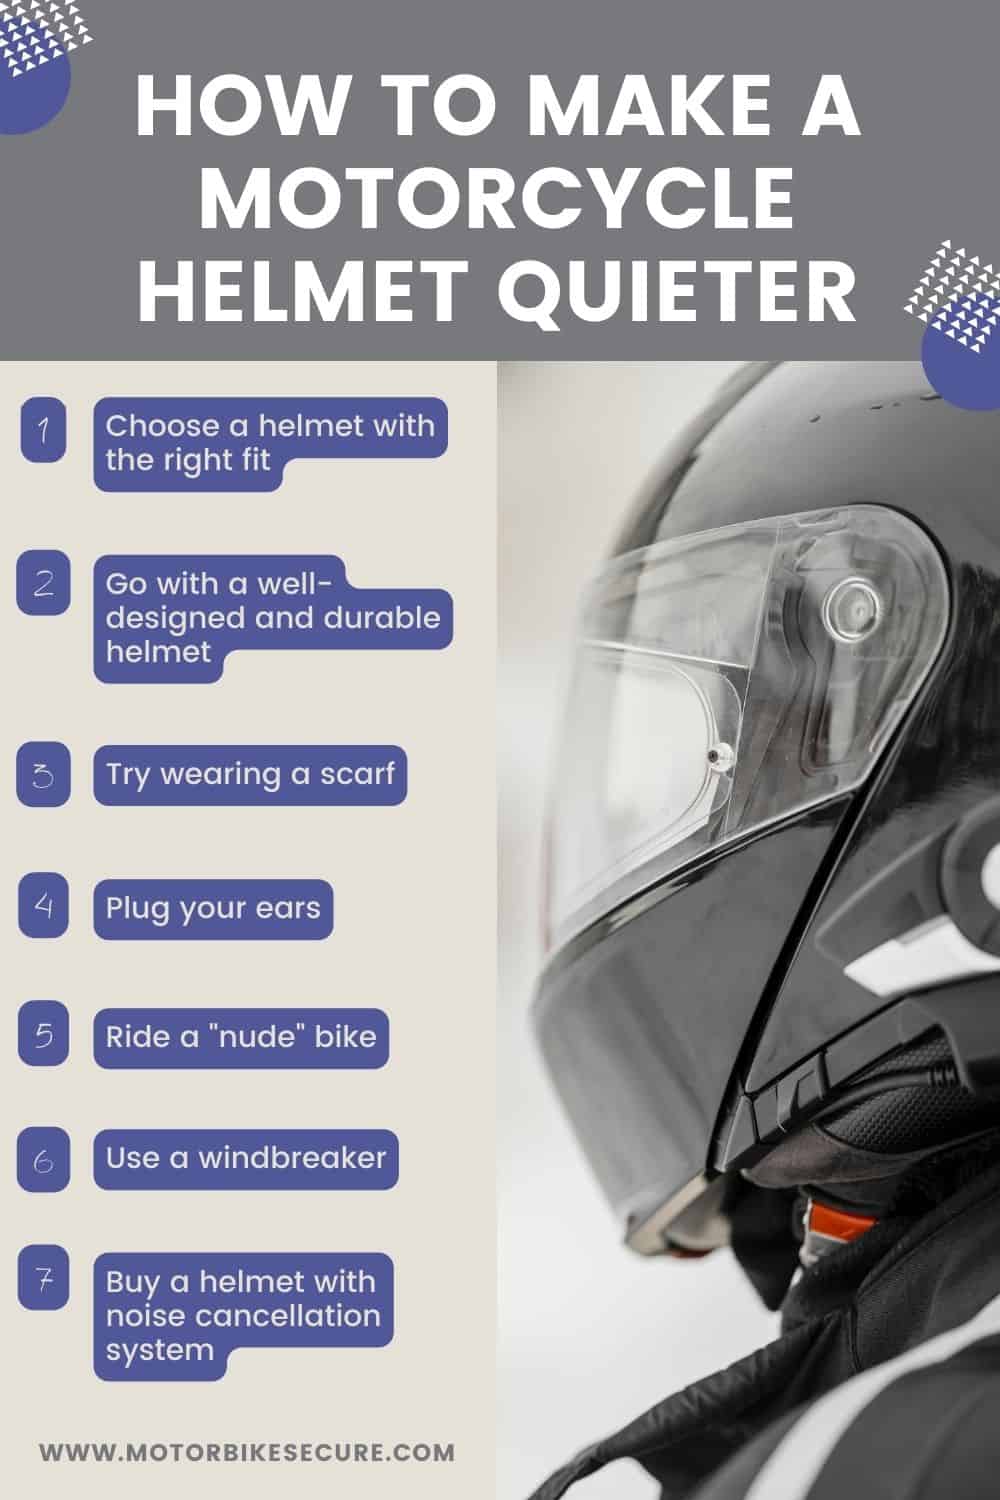 Reduce Wind Noise Motorcycle Helmet – Cut Noises!